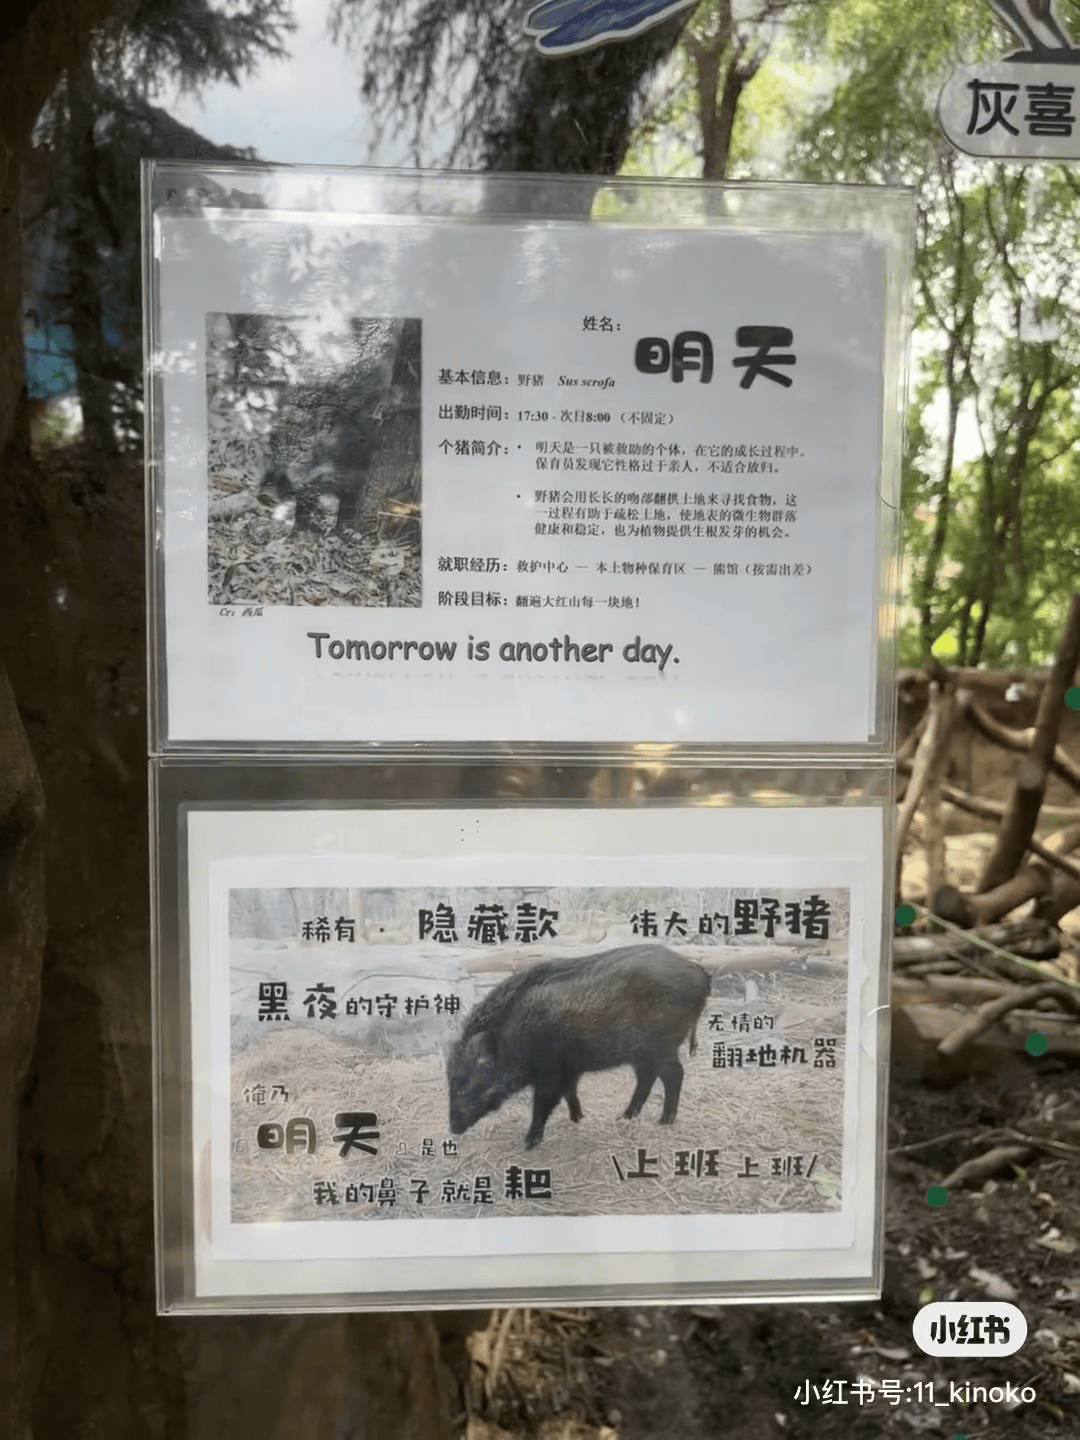 一年上30次热搜,南京红山动物园凭什么?